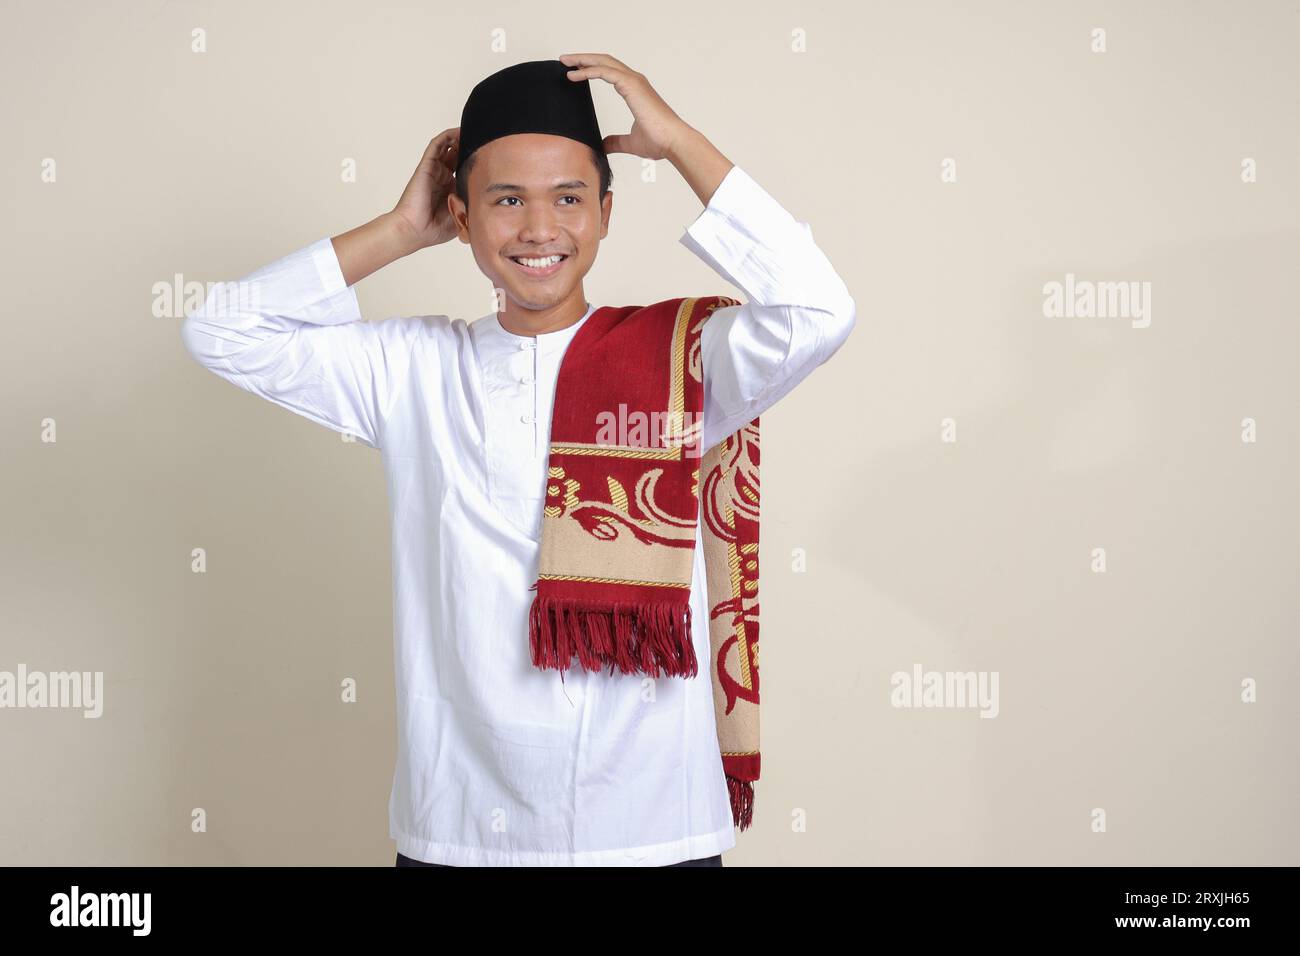 Ritratto di un attraente uomo musulmano asiatico in camicia bianca con berretto che cerca di regolare il suo songkok o skullcap nero. Immagine isolata su sfondo grigio Foto Stock